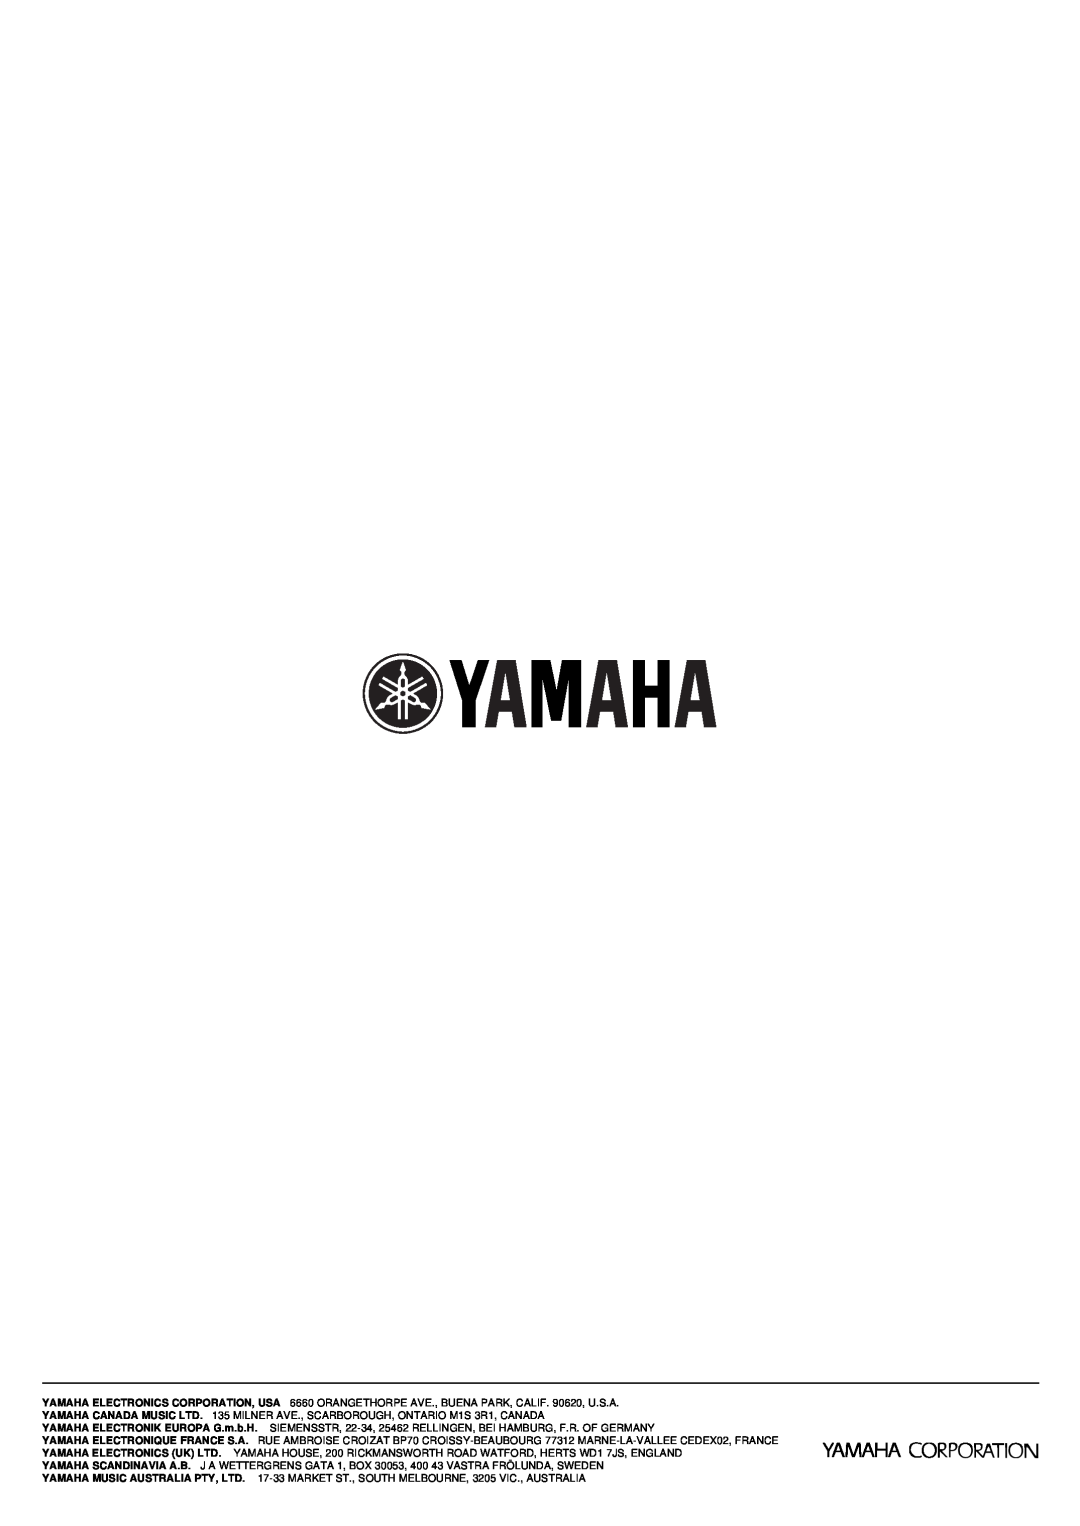 Yamaha AX-496/396 owner manual YAMAHA ELECTRONICS CORPORATION, USA 6660 ORANGETHORPE AVE., BUENA PARK, CALIF. 90620, U.S.A 